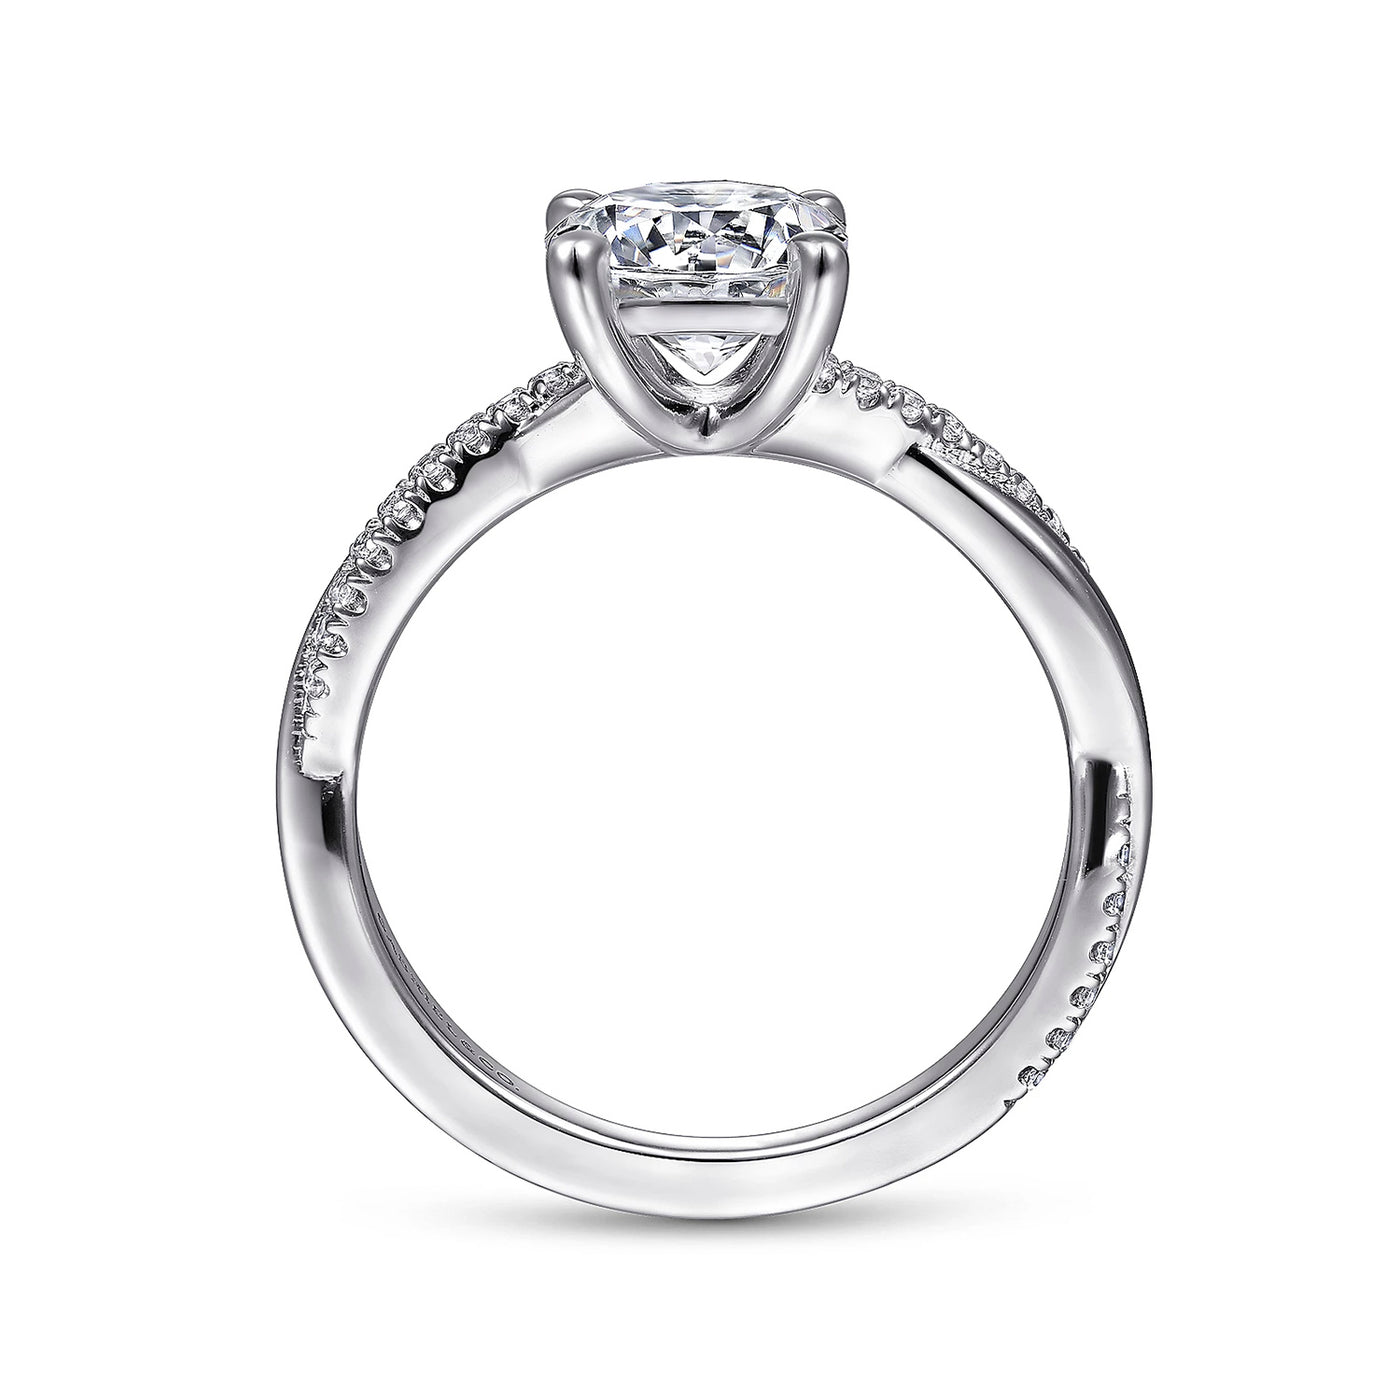 Gabriel & Co. 14k White Gold Cross Over Diamond Semi-Mount Engagement Ring – ER14922R4W44JJ.CSCZ